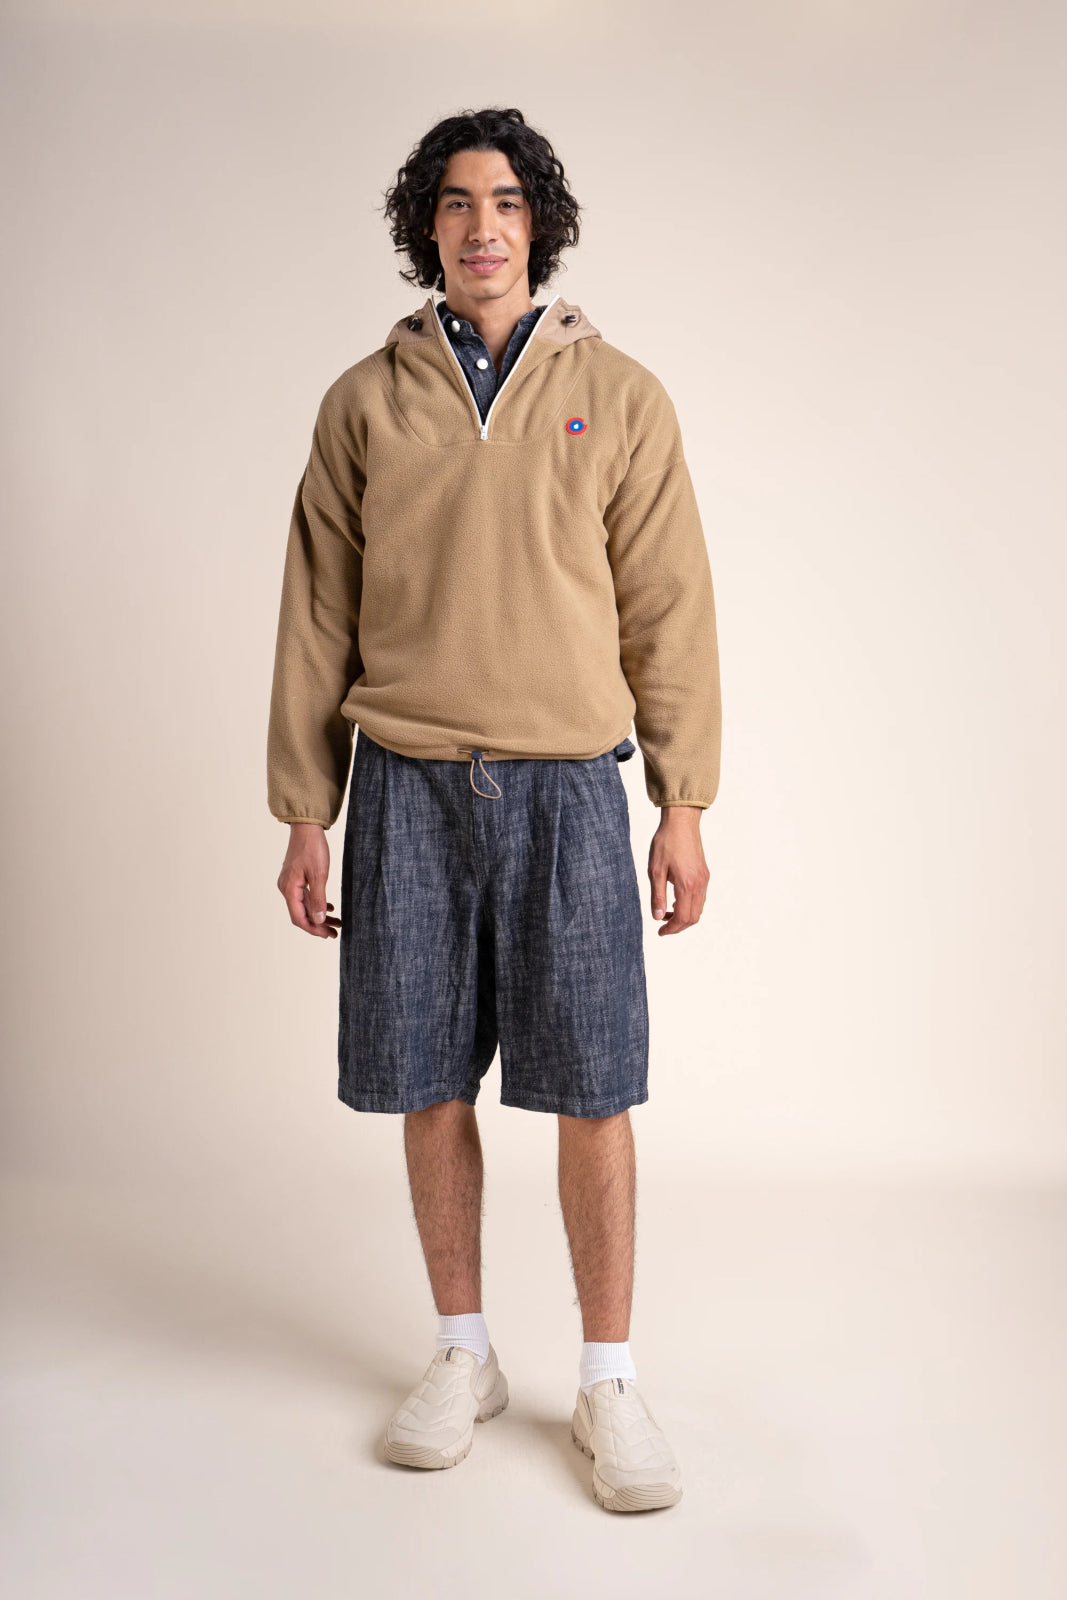 Belleville - Waterproof fleece hoodie - Flotte #couleur_sahara